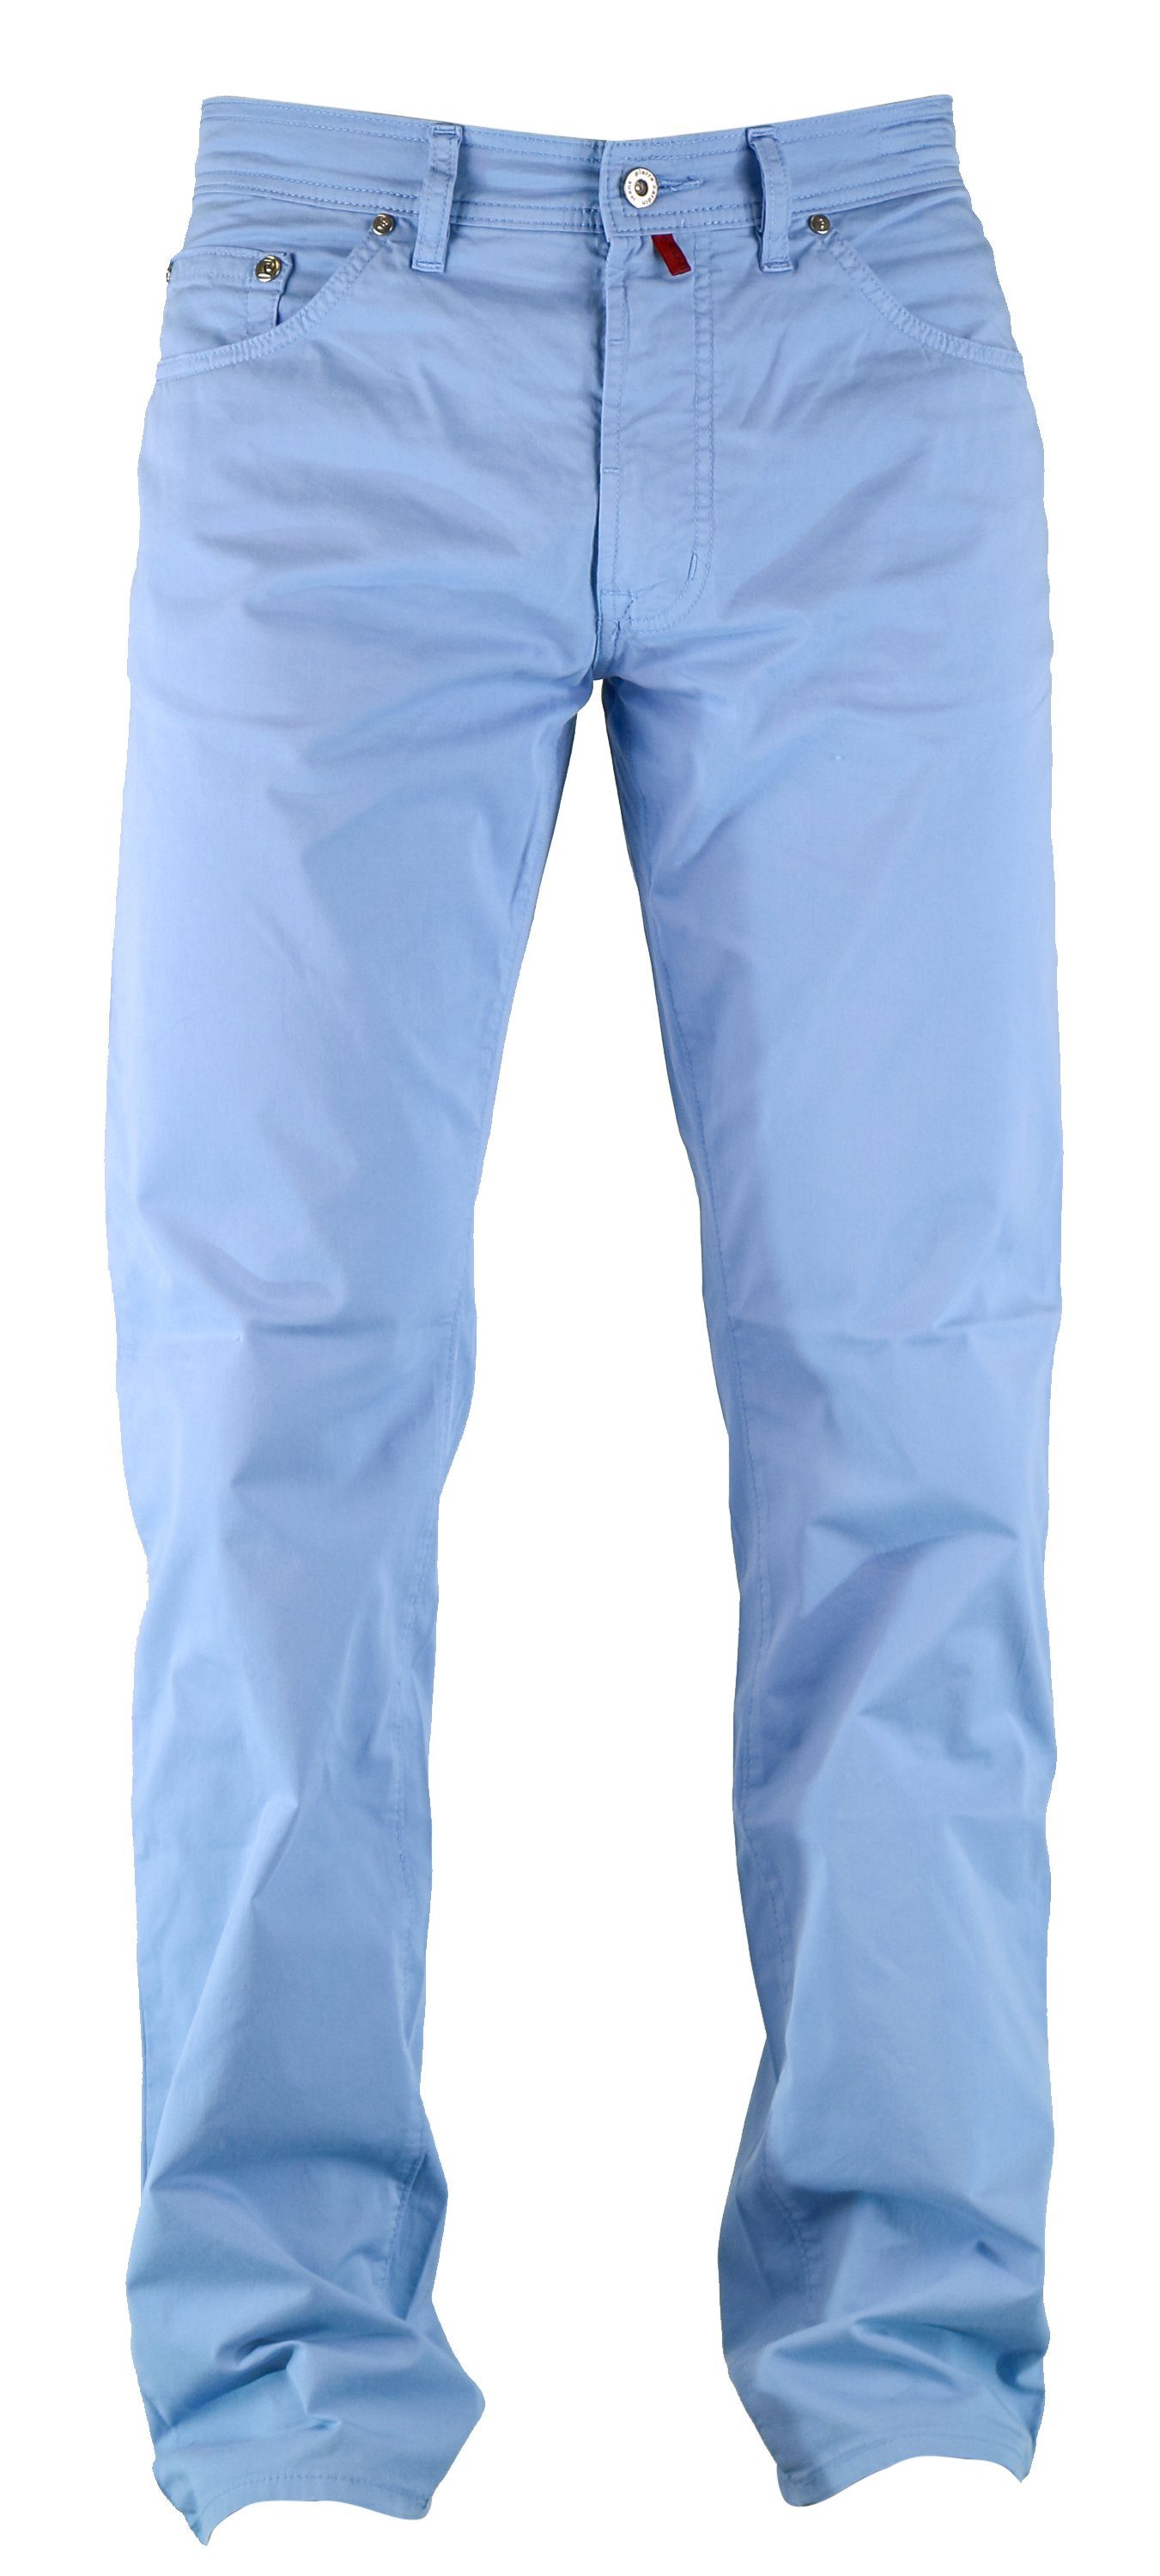 Pierre Cardin 5-Pocket-Jeans PIERRE CARDIN DEAUVILLE summer air touch  heaven blue 3196 444.60